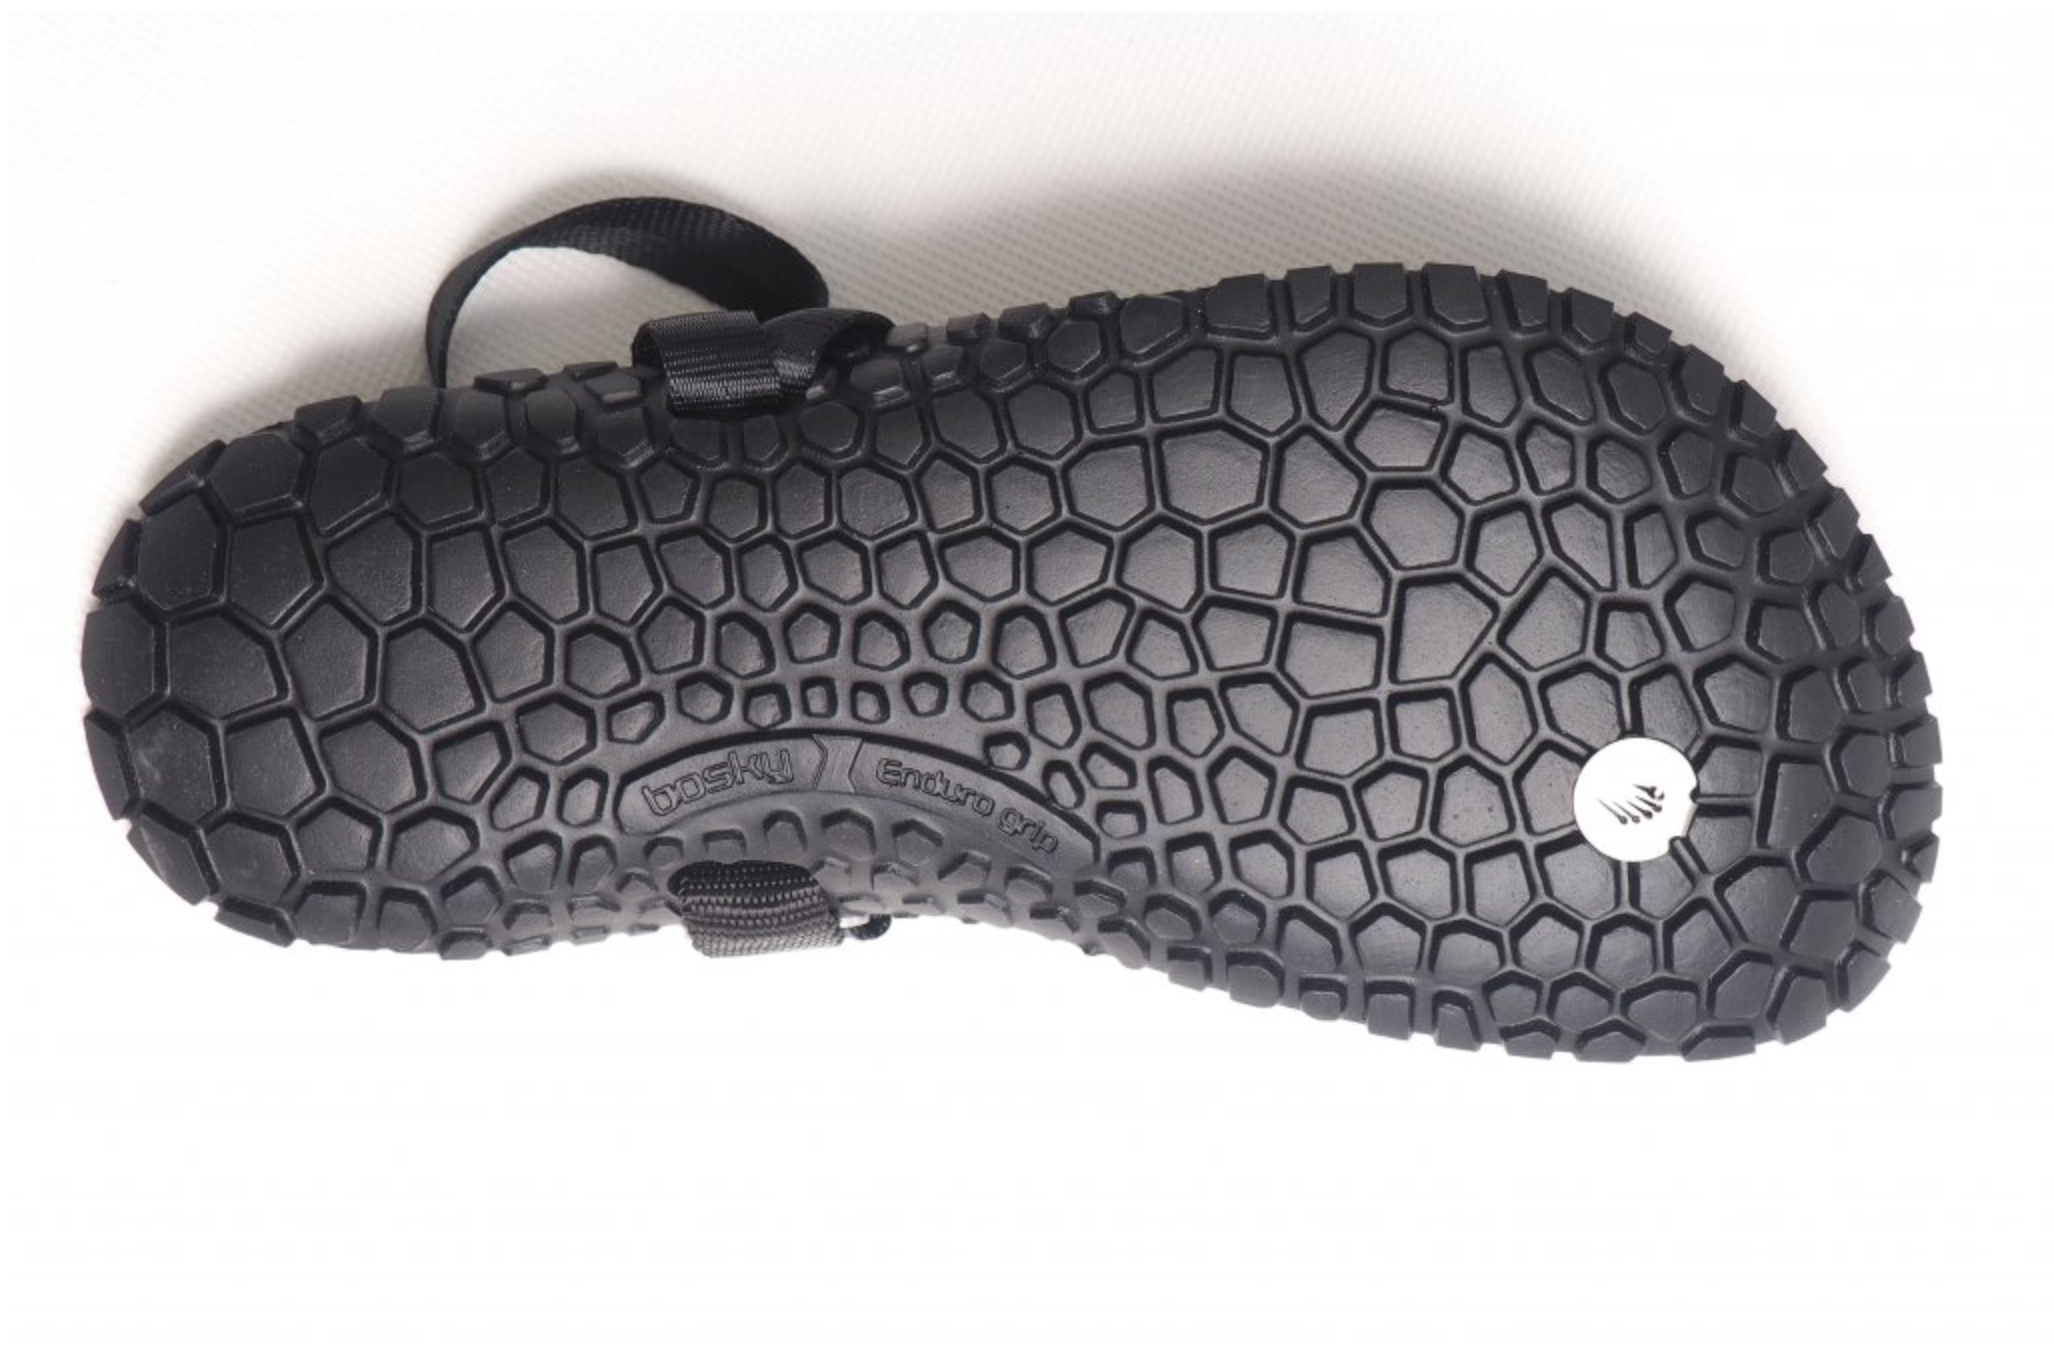 Bosky Enduro 2.0 Y Medium barfods sandaler til kvinder og mænd i farven black, saal